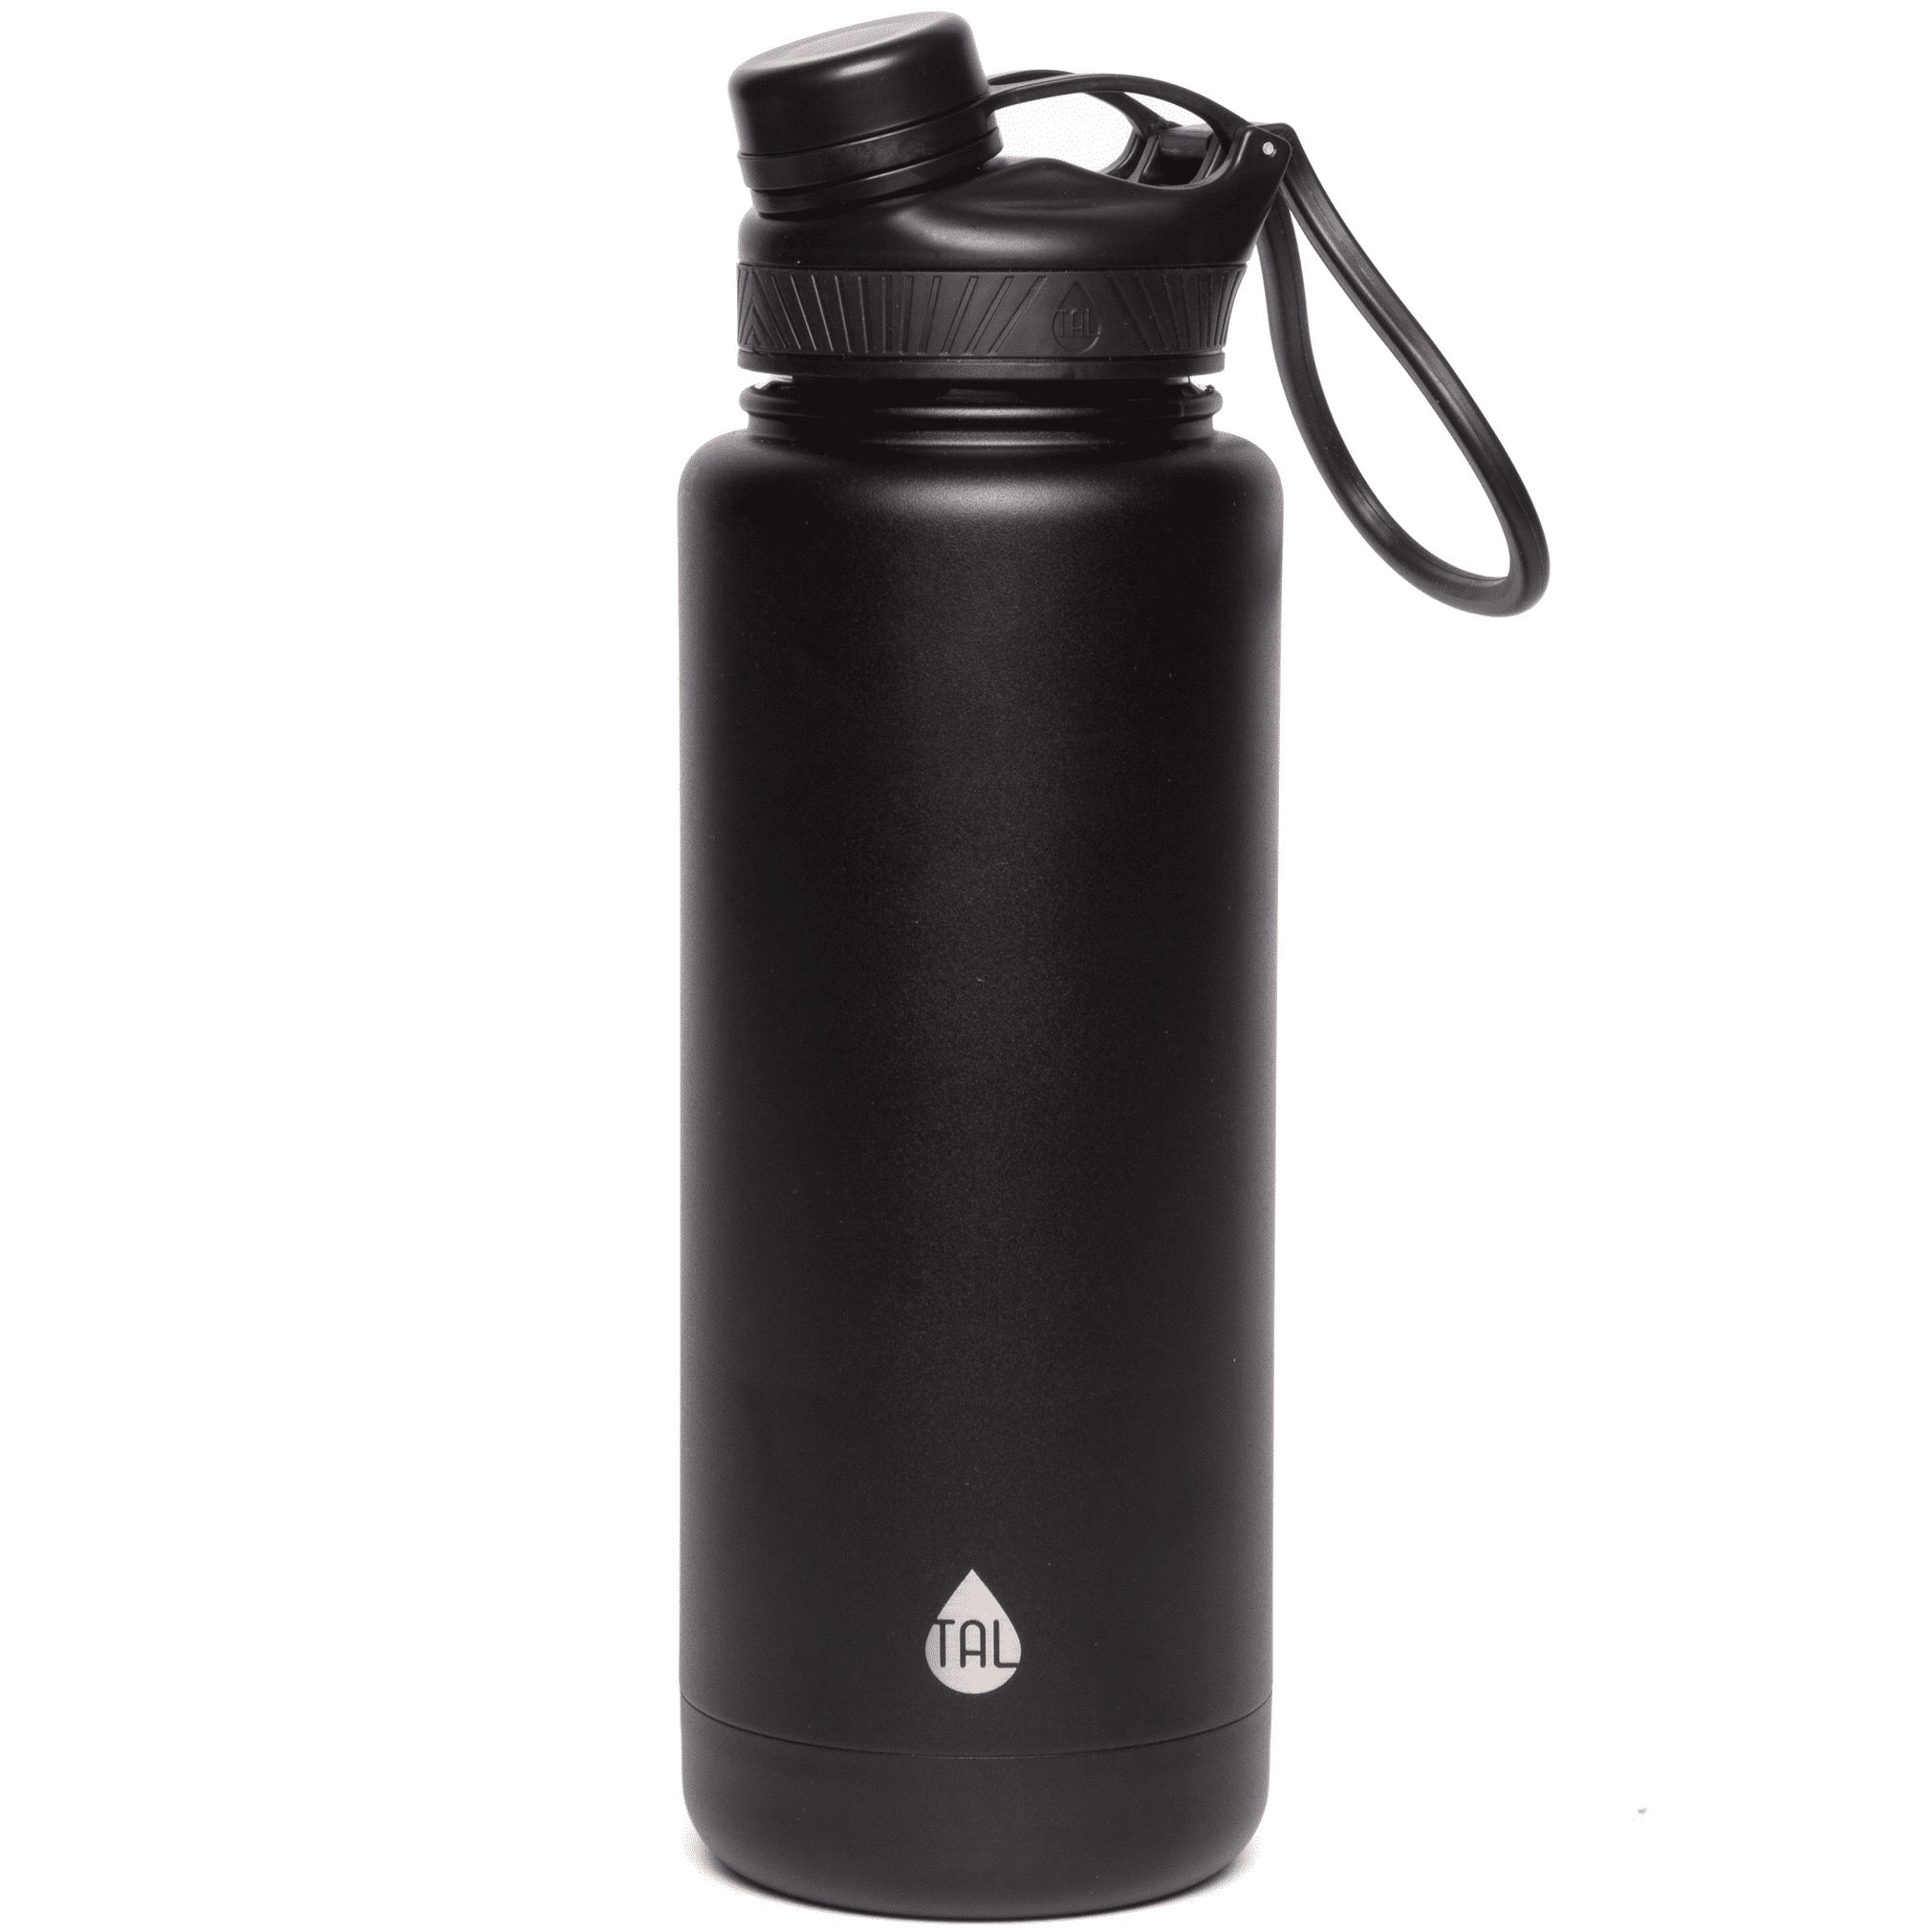 40oz Black Stainless Steel Water Bottle for Rangers